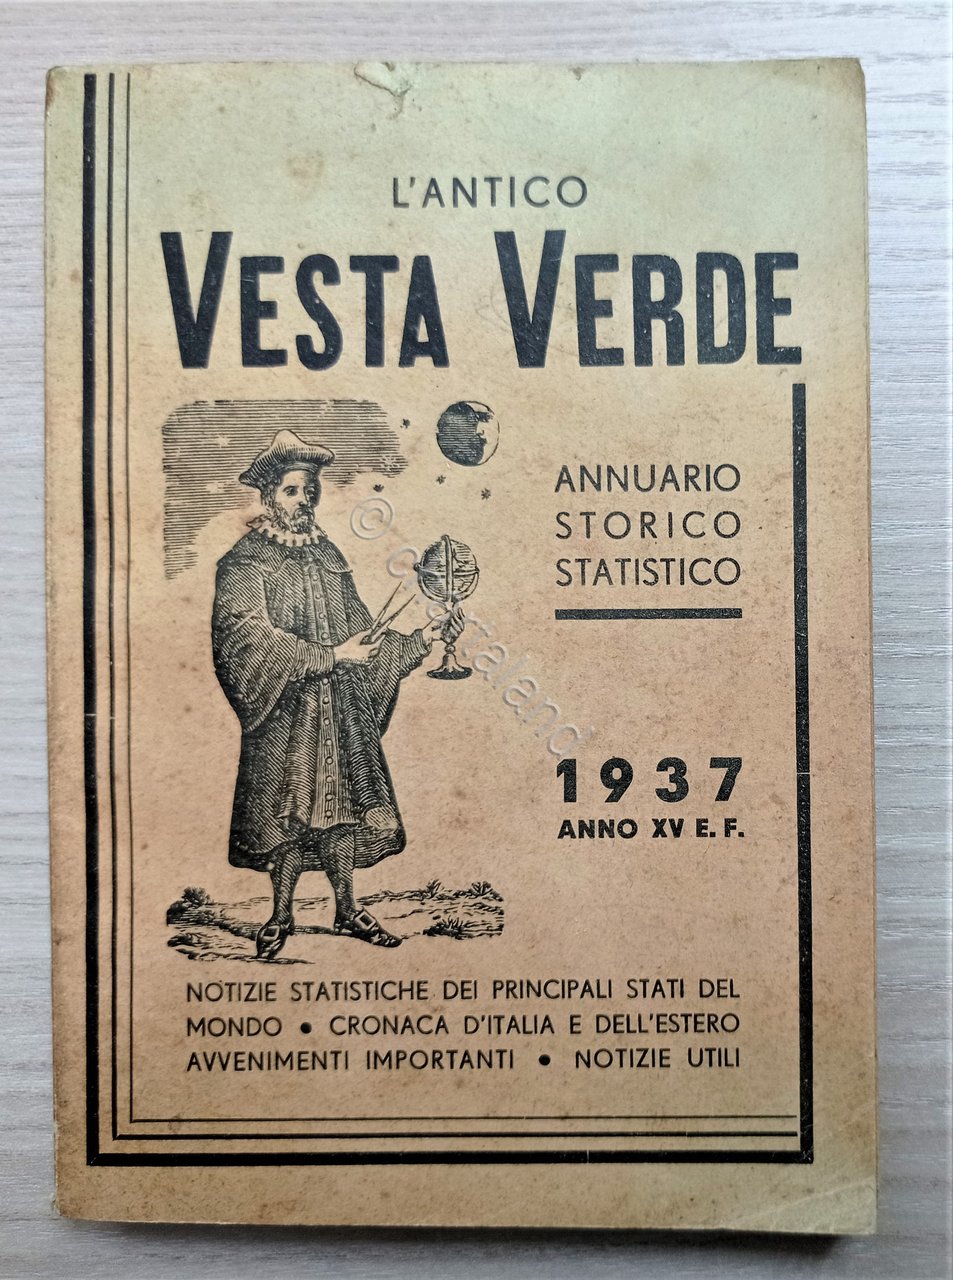 L'Antico Vesta Verde - Almanacco-Annuario Storico Statistico - ed. 1937